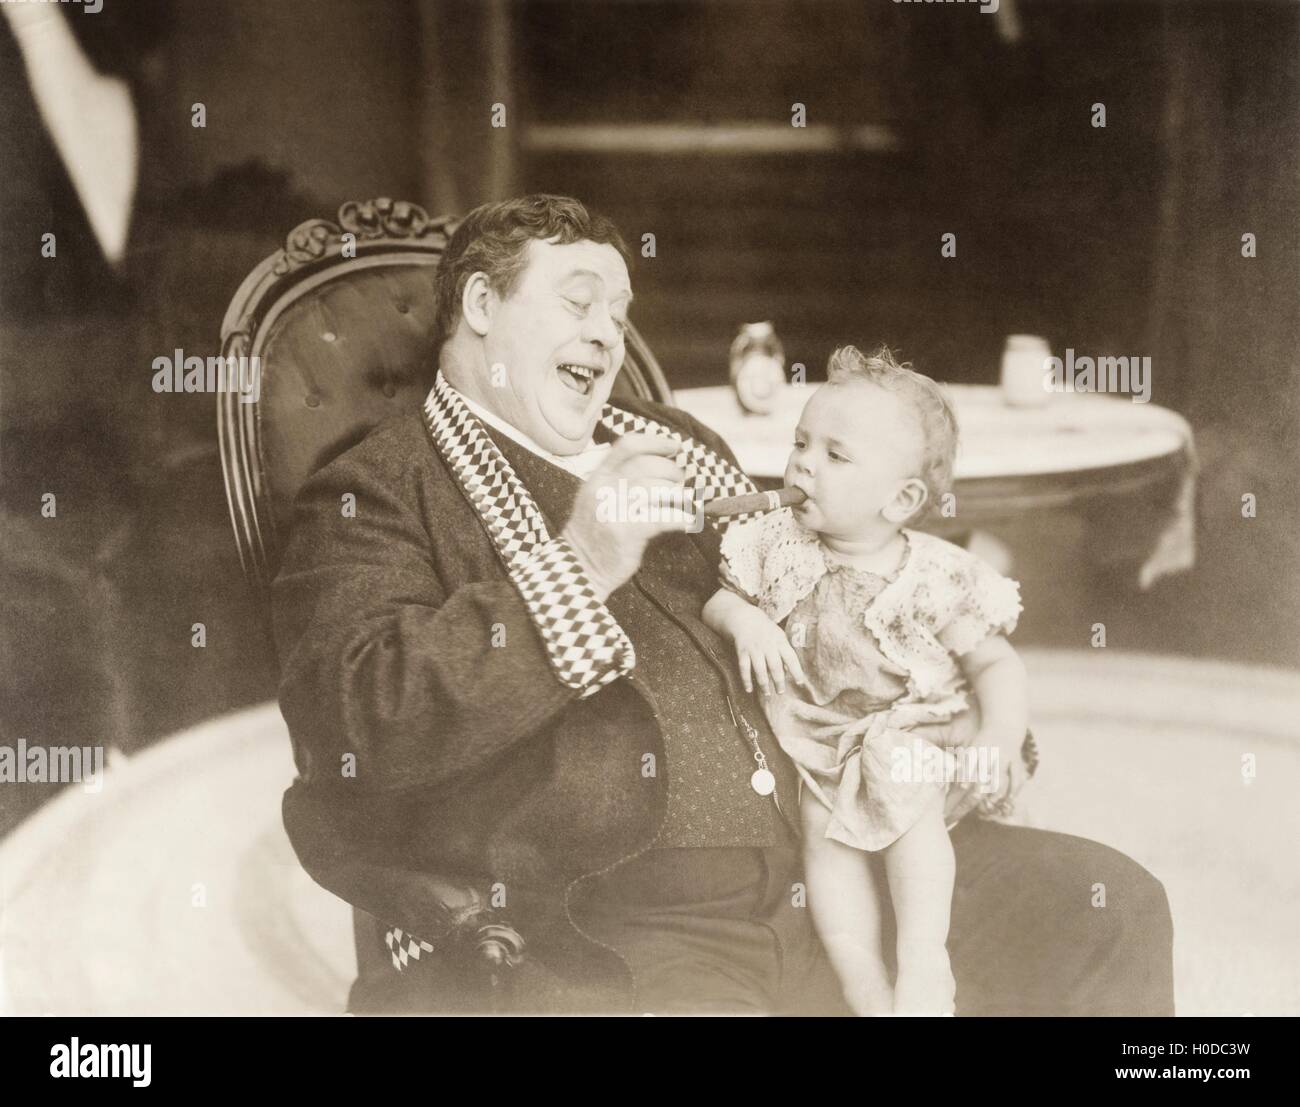 L'uomo ridere baby fumatori di sigaro Foto Stock